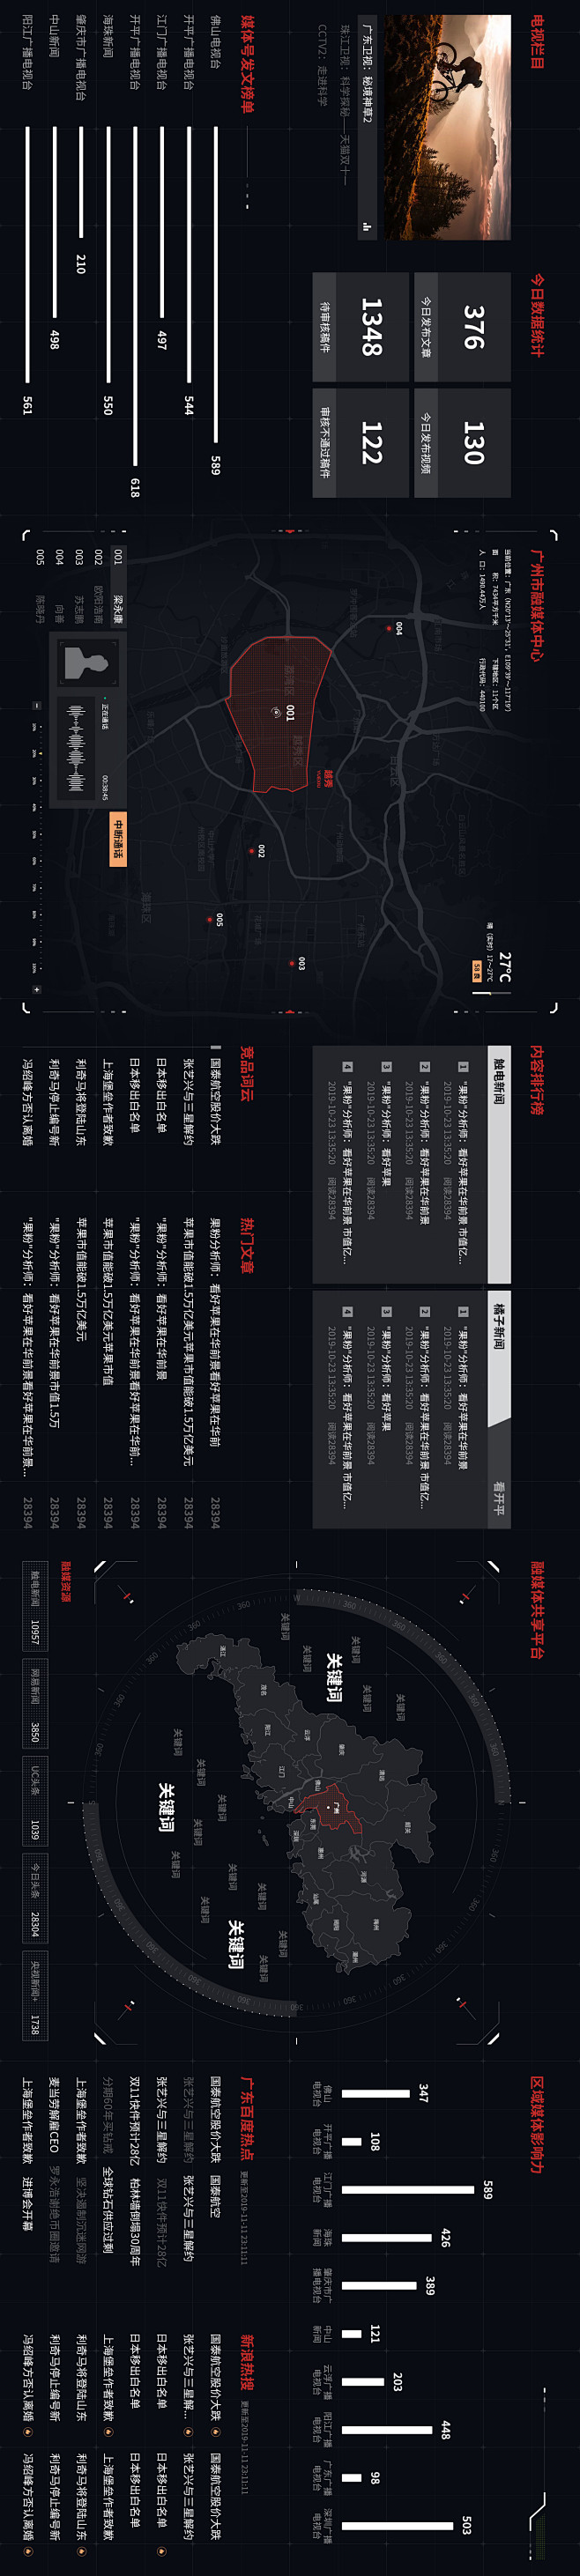 数据大屏设计-UI中国用户体验设计平台